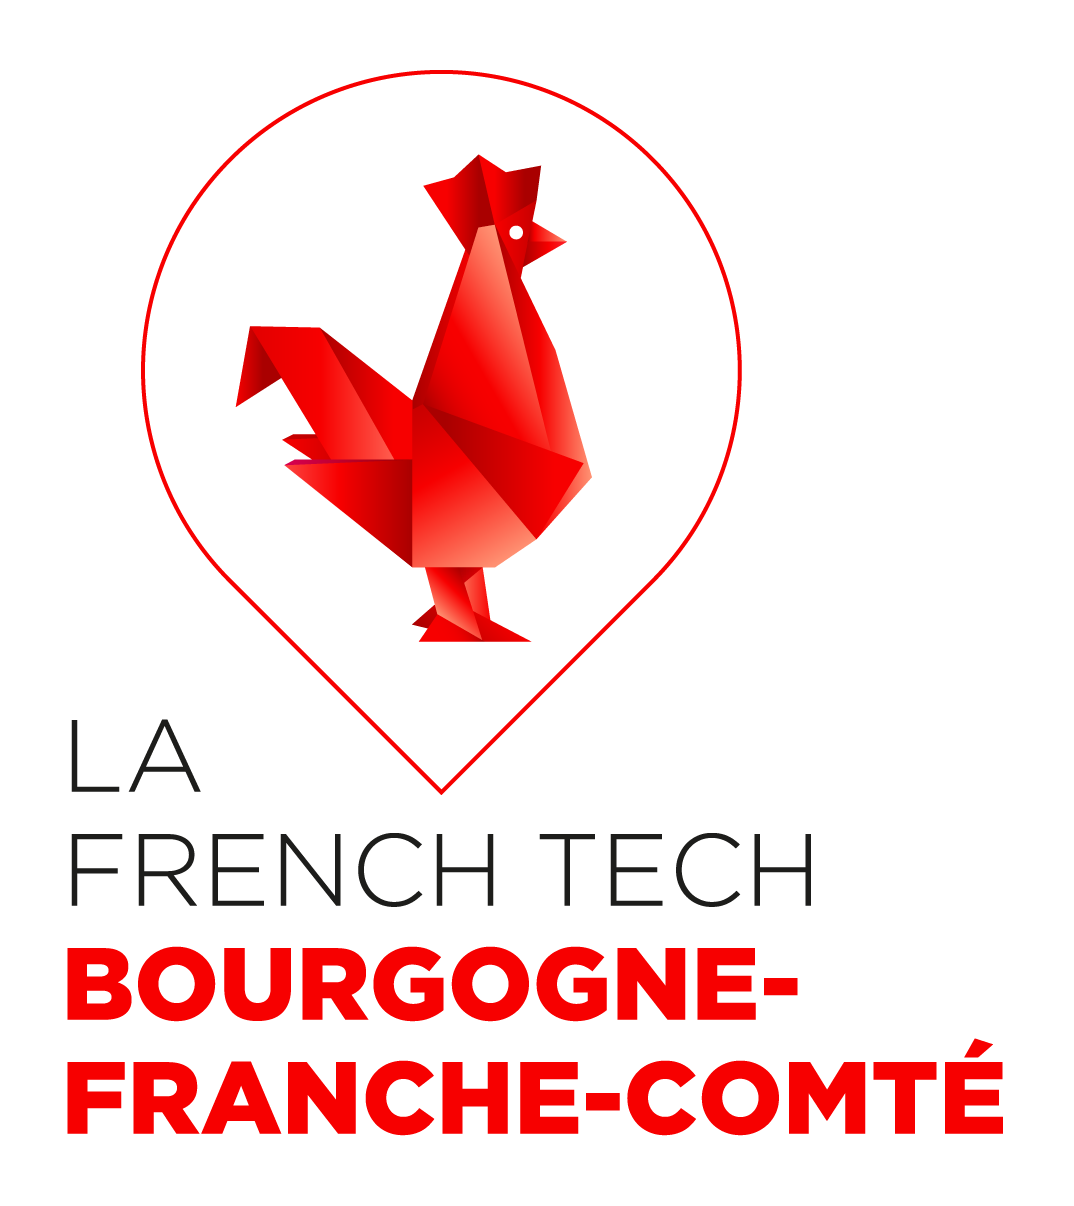 La French Tech Bourgogne Franche-Comté